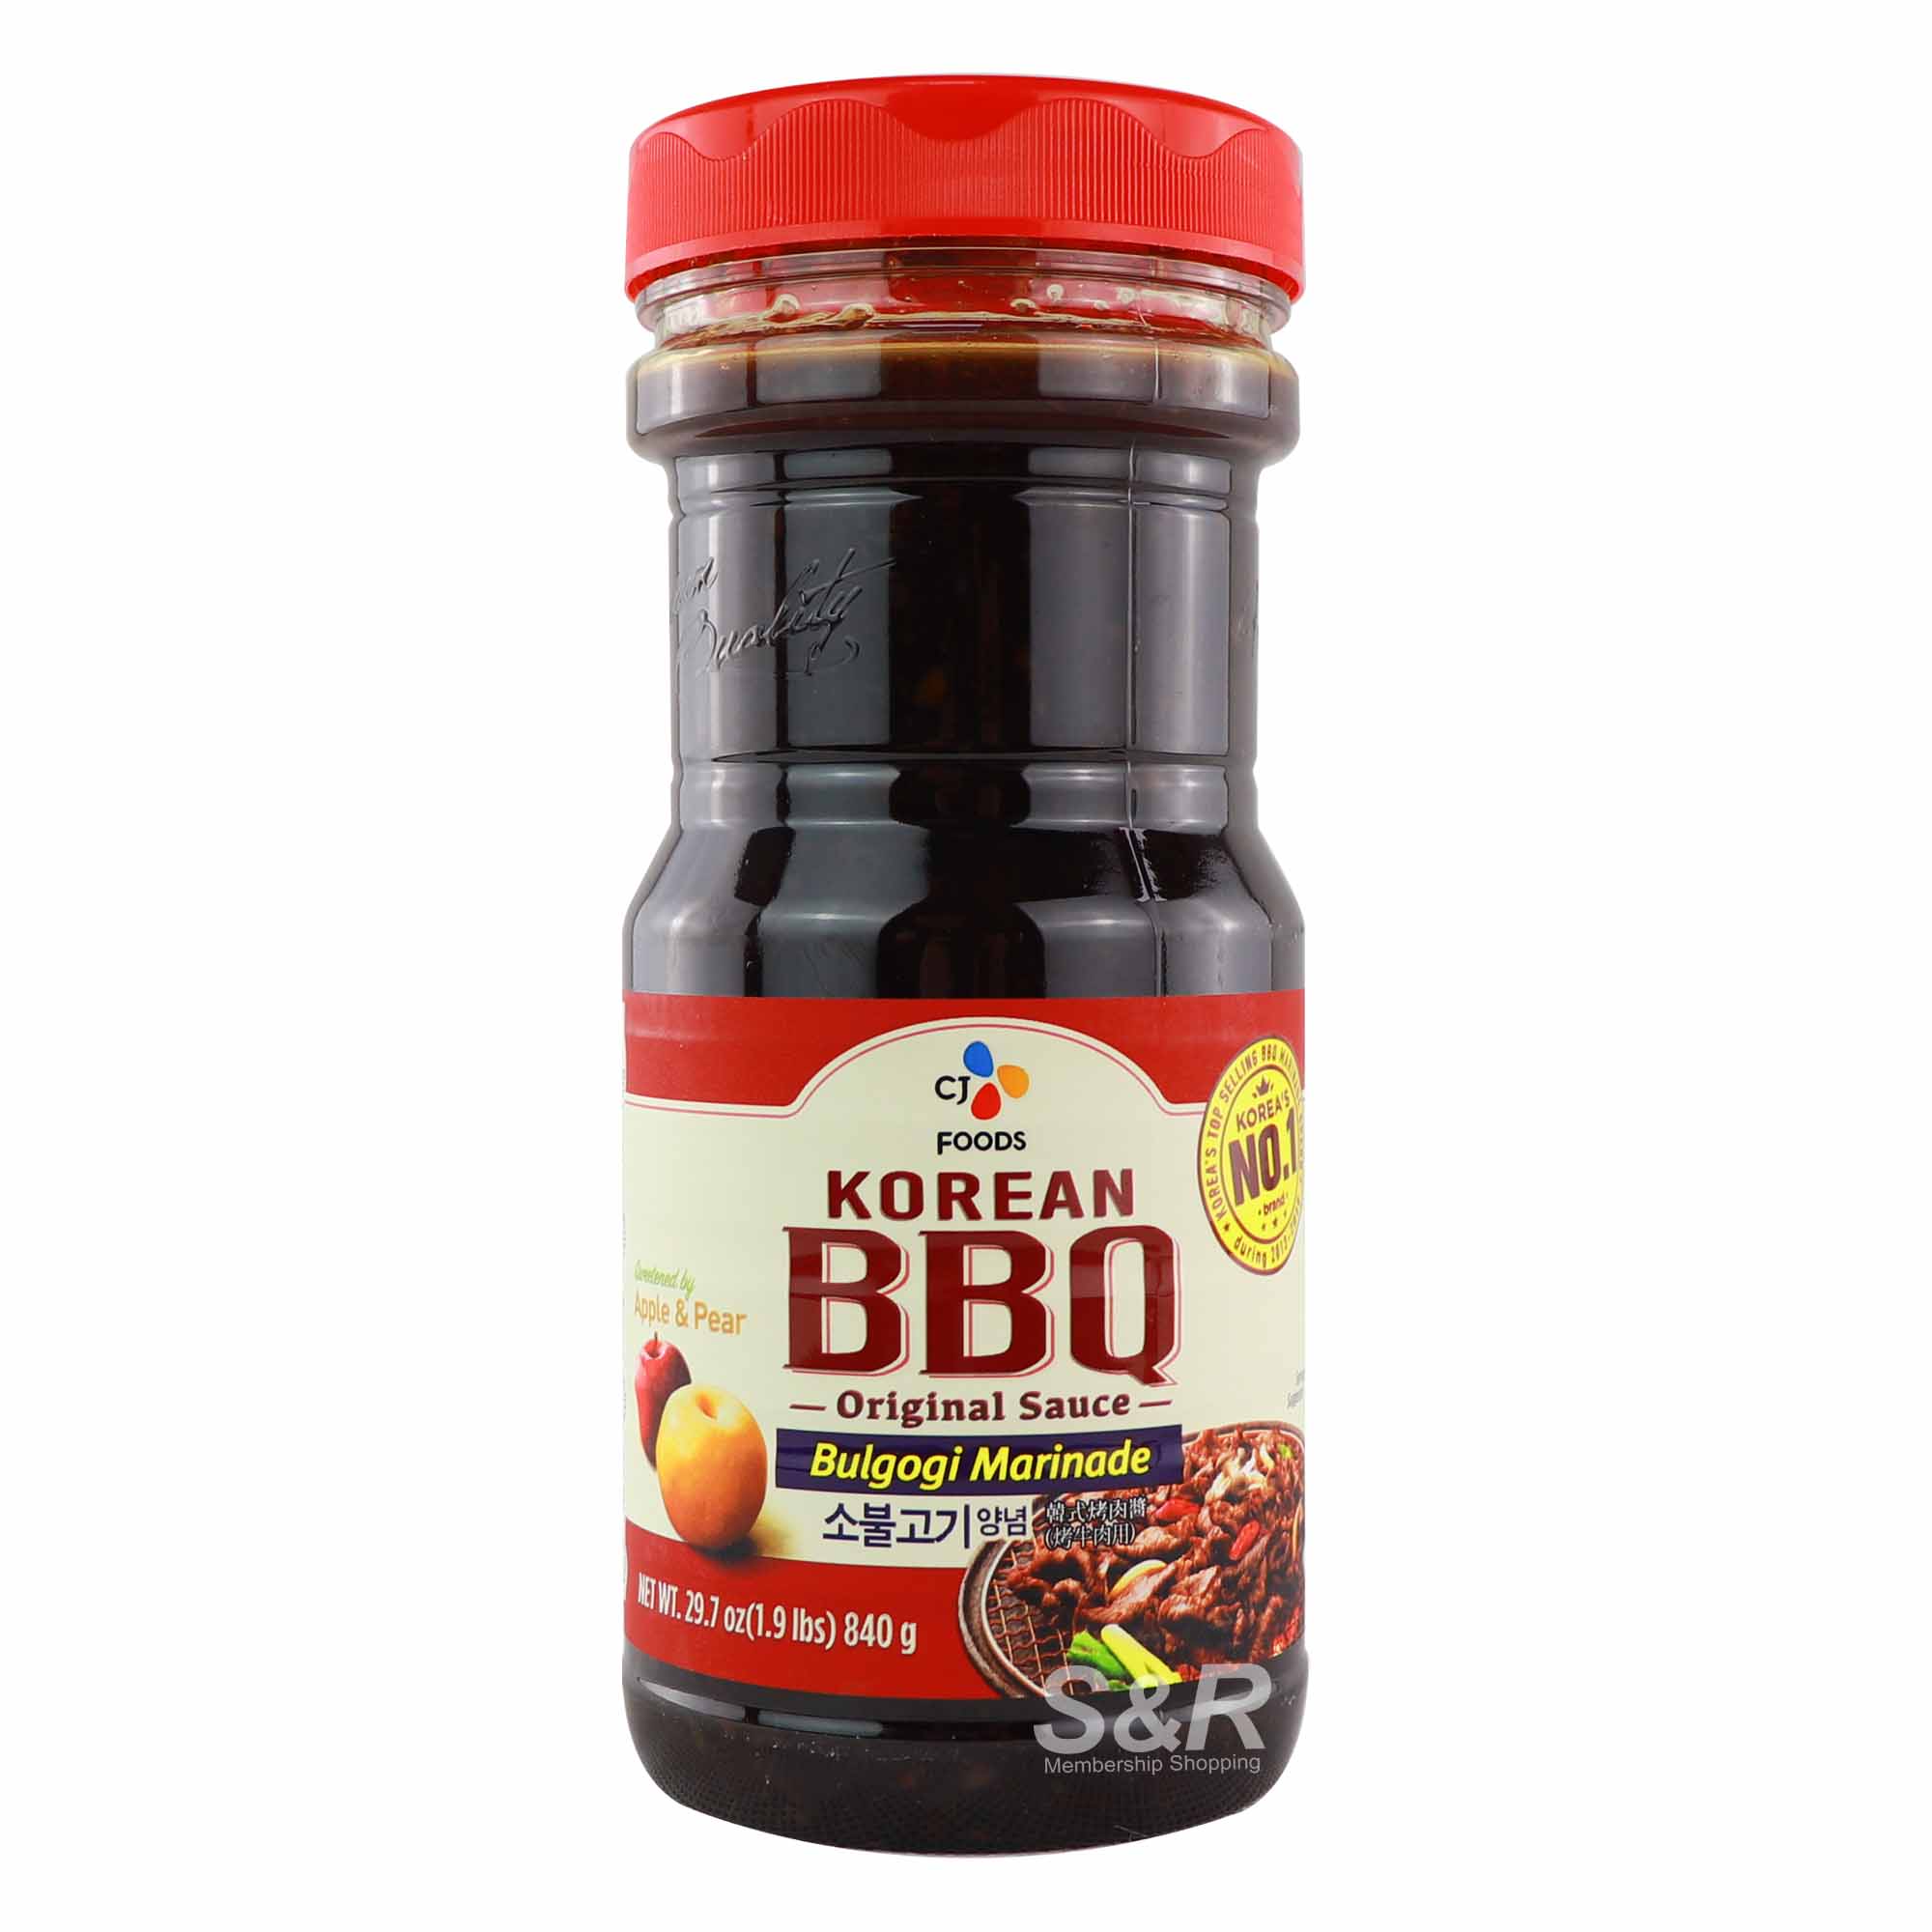 CJ Foods Bulgogi Marinade Korean BBQ Sauce 840g